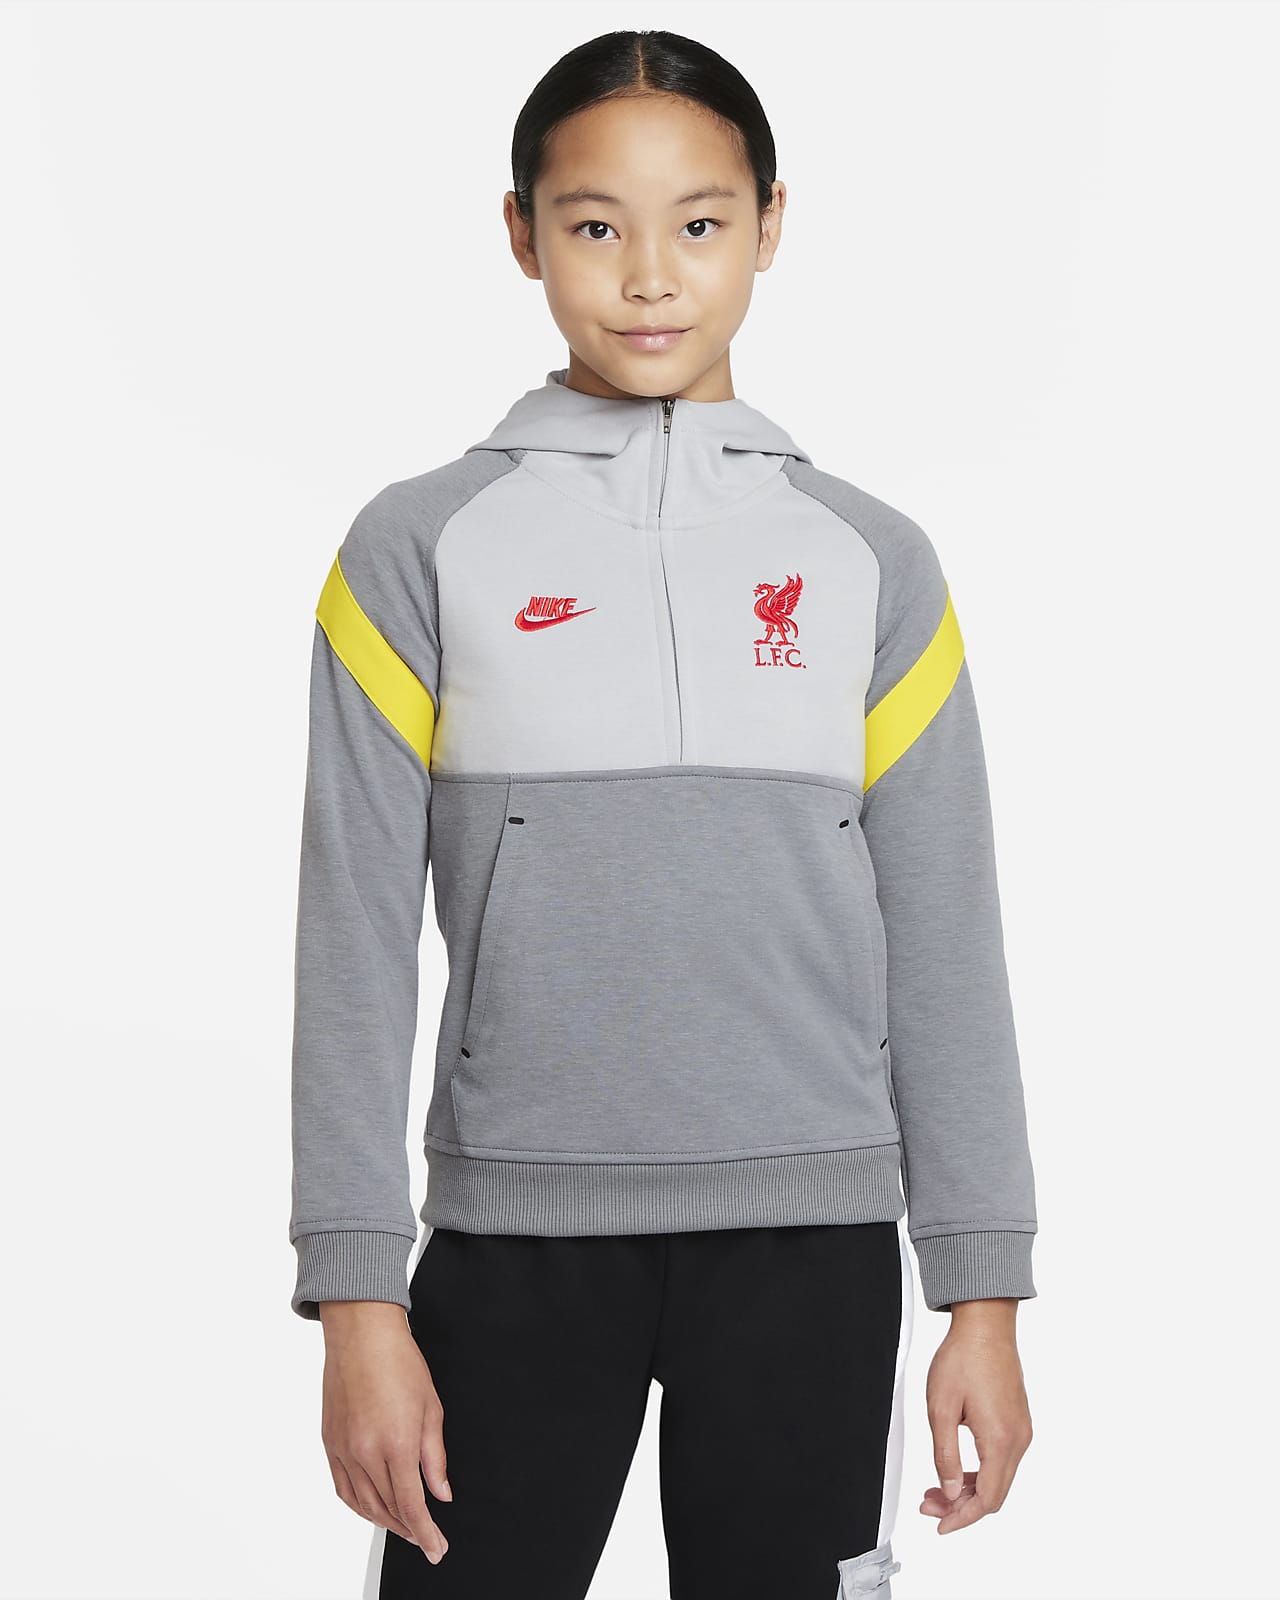 Ποδοσφαιρική μπλούζα με κουκούλα και φερμουάρ στο μισό μήκος Λίβερπουλ για μεγάλα παιδιά